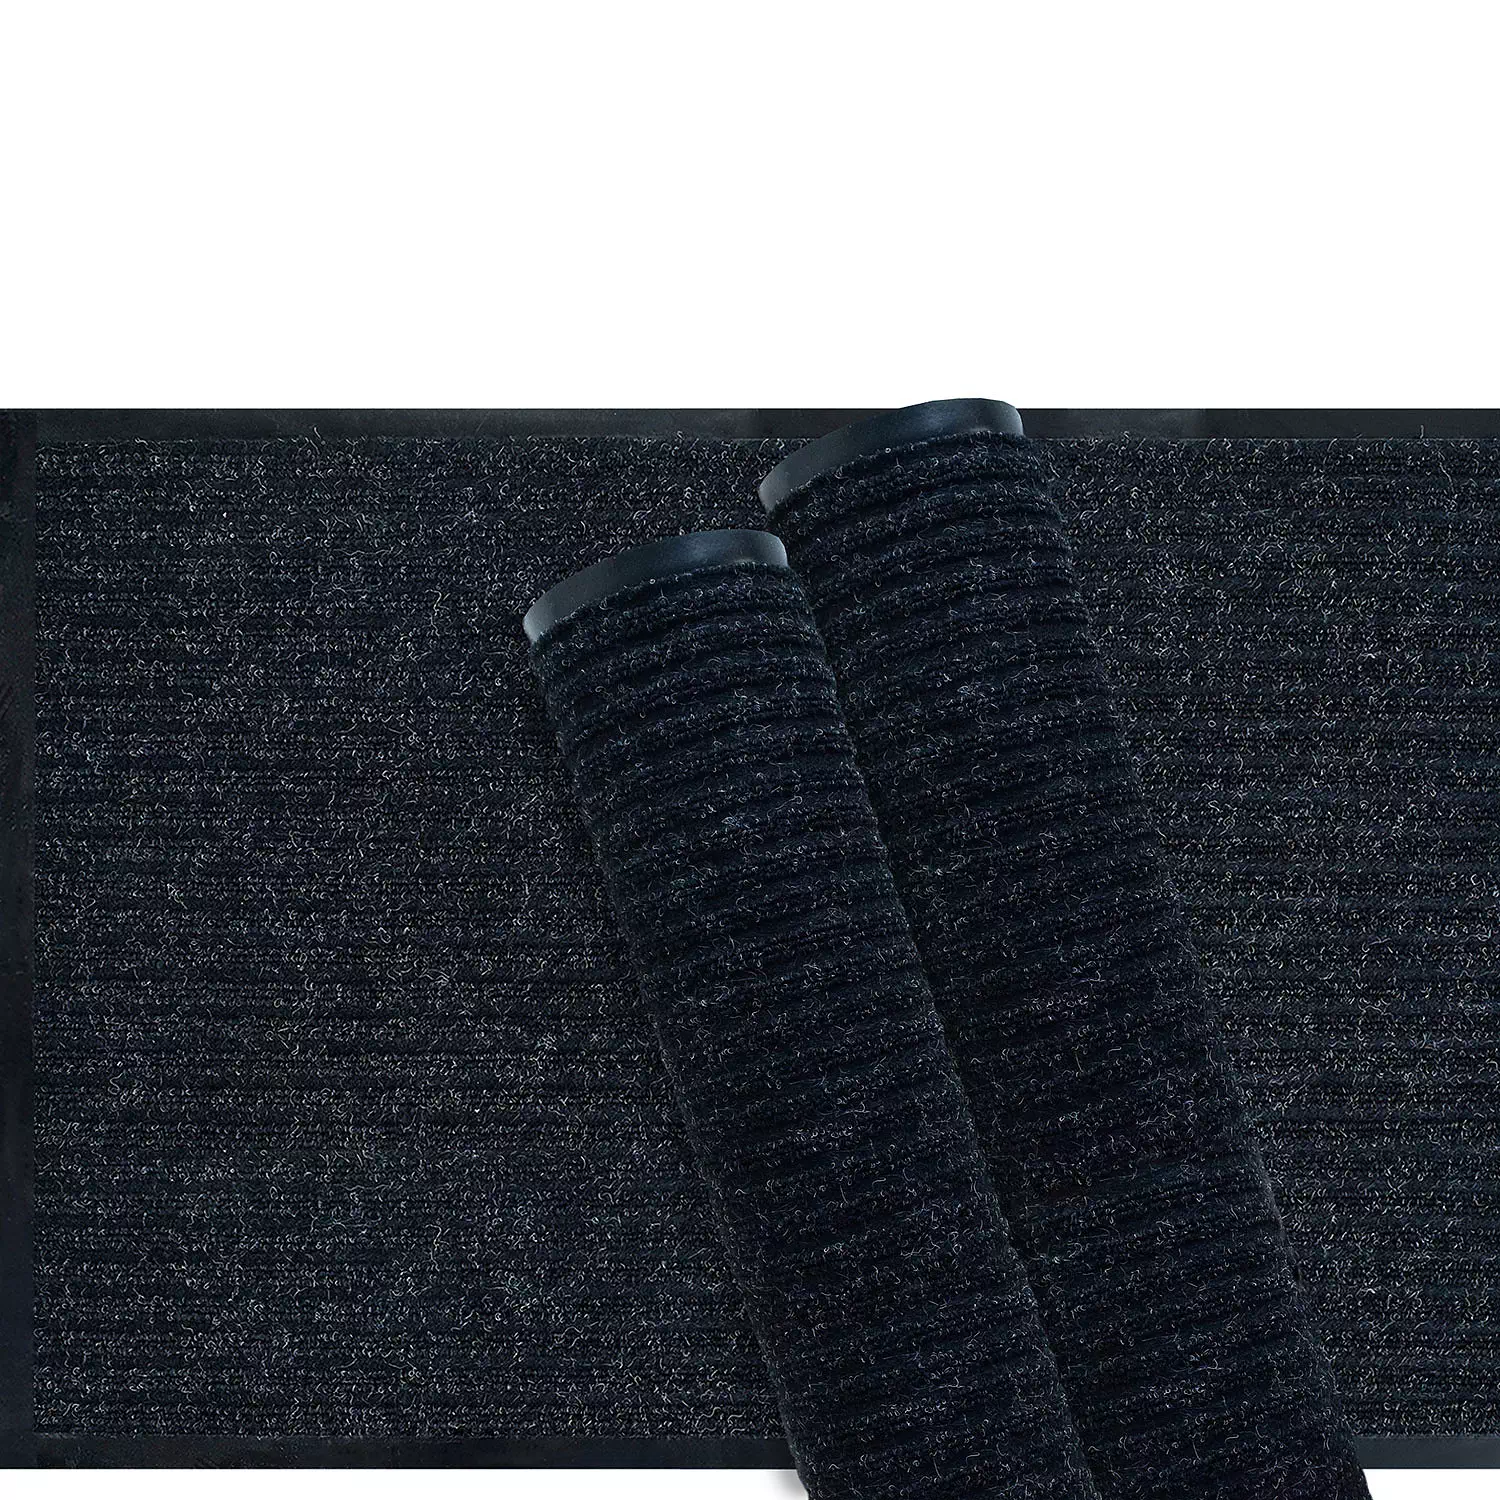 Indoor/outdoor mat with vinyl border, 2'x3'